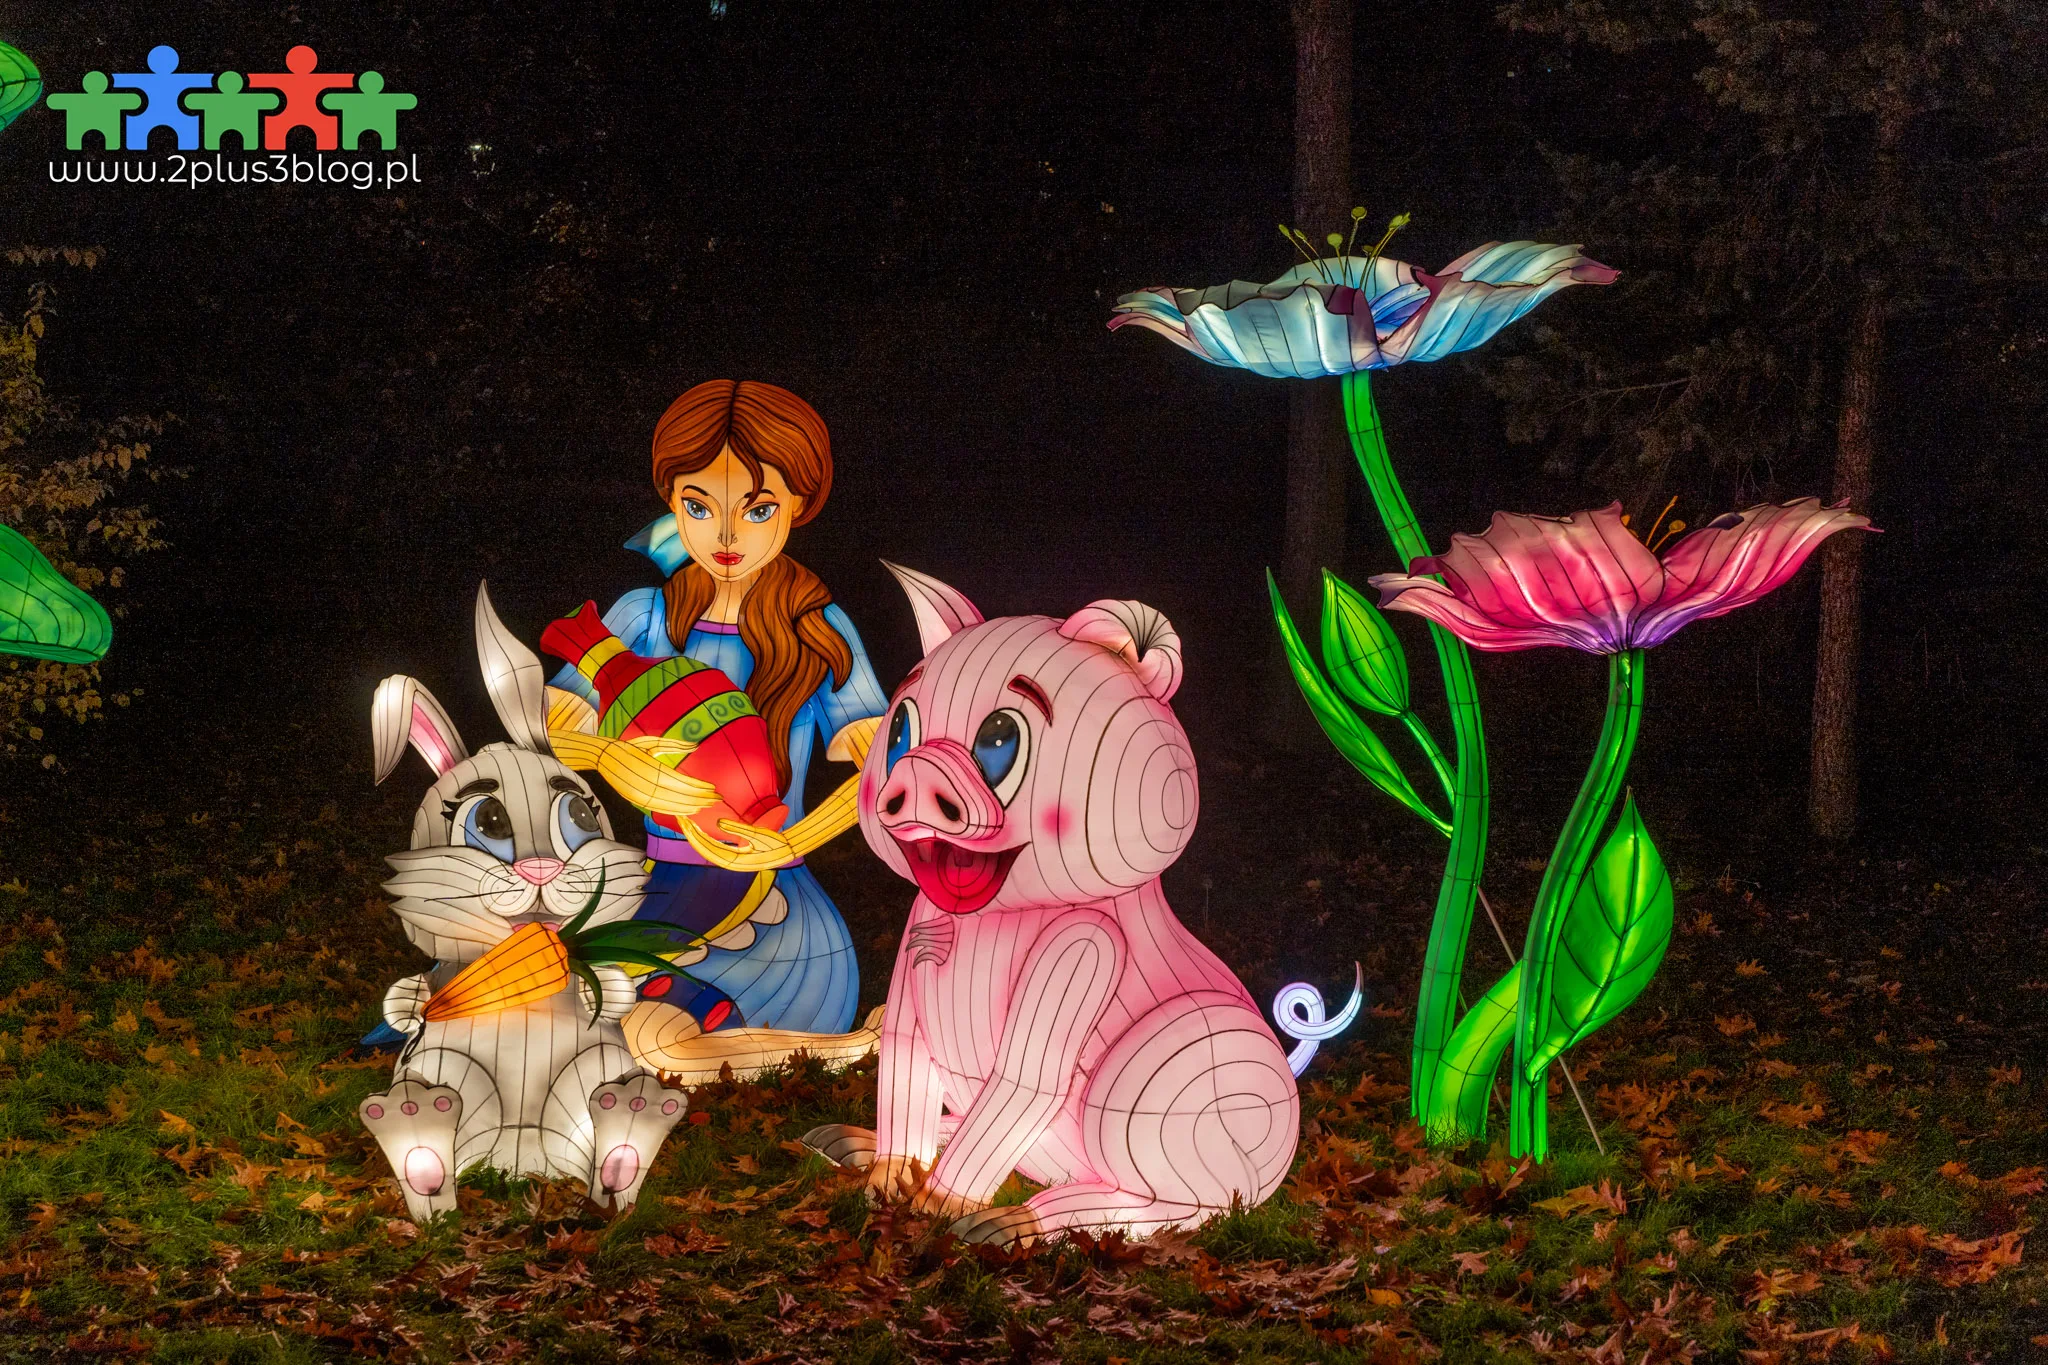 Ogród Świateł ponownie zawitał w chorzowskiej Legendii! W tym roku  nawiązuje do kultowej bajki Disneya: Piękna i Bestia.